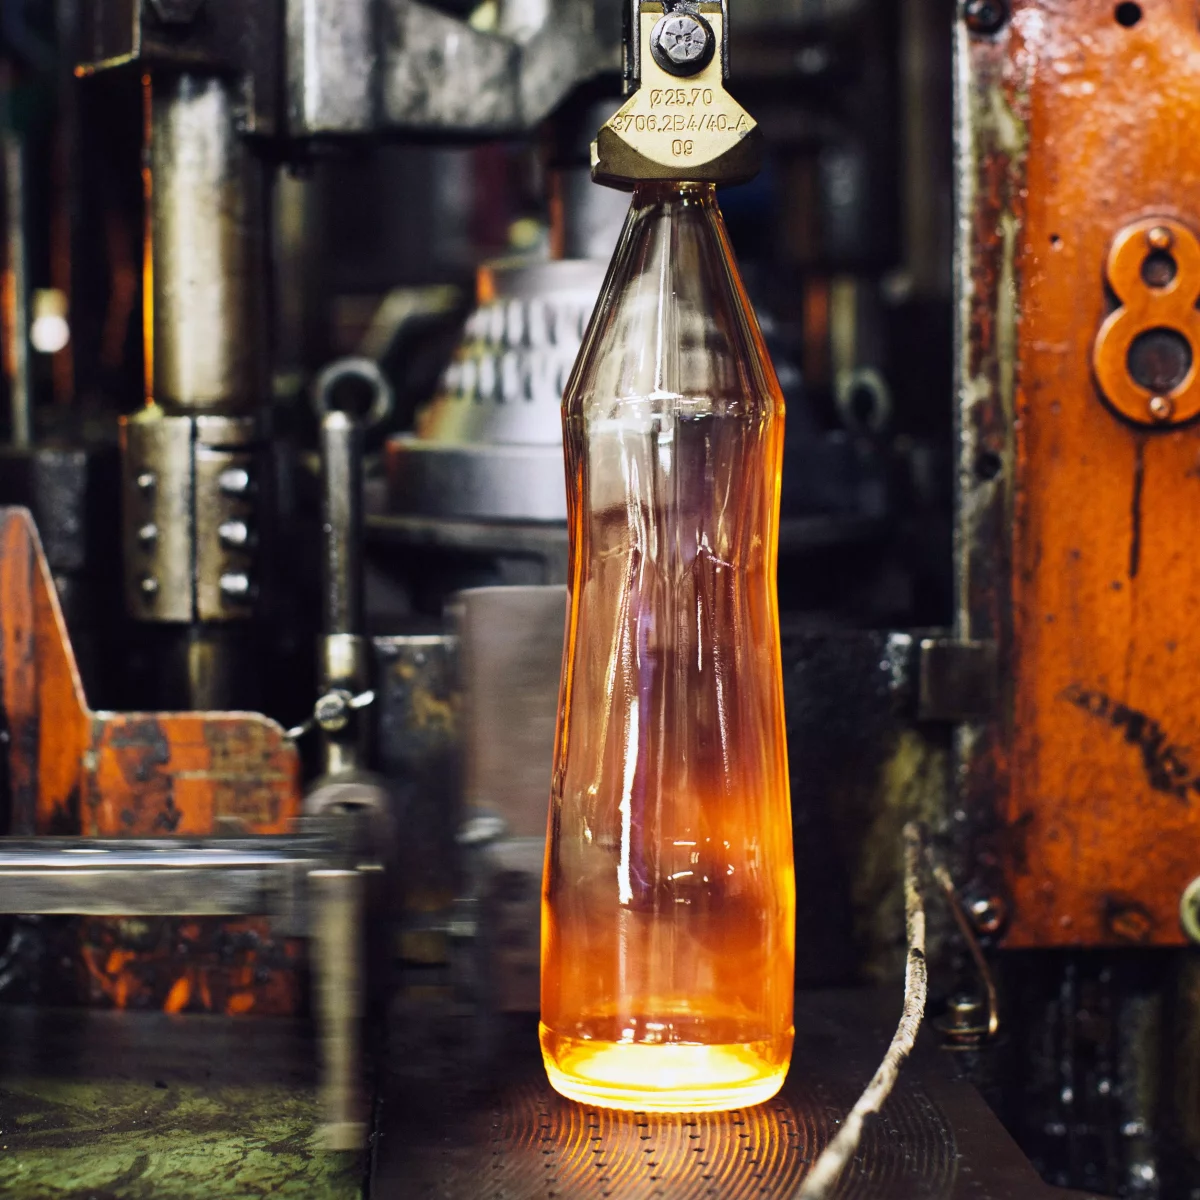 Gasteiner glass bottle manufacturing